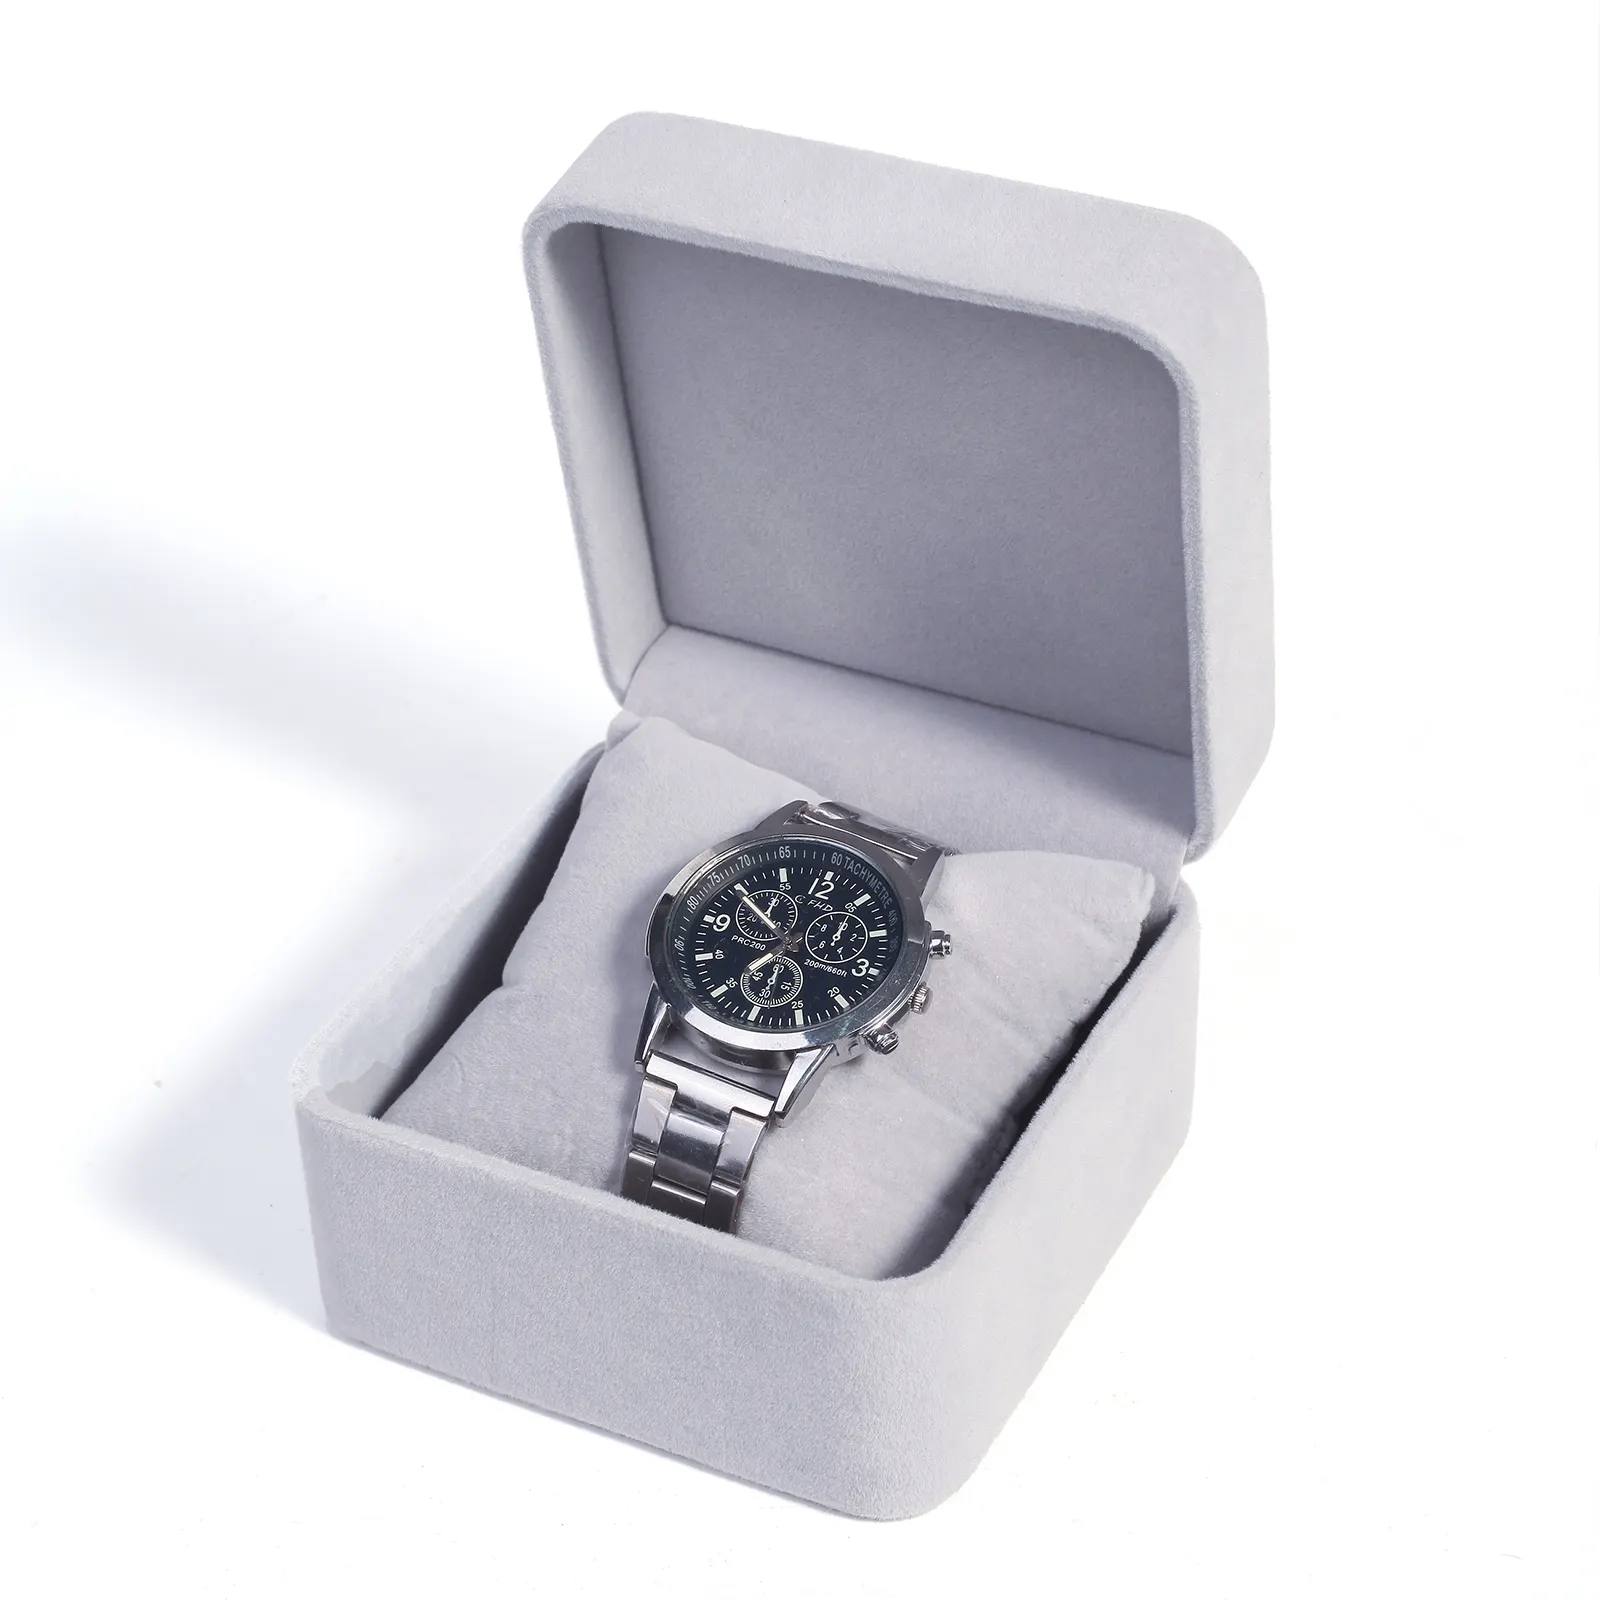 Meilleur boîtier d'emballage de montre personnalisé de luxe beige boîte cadeau de montre personnalisée avec logo personnalisé